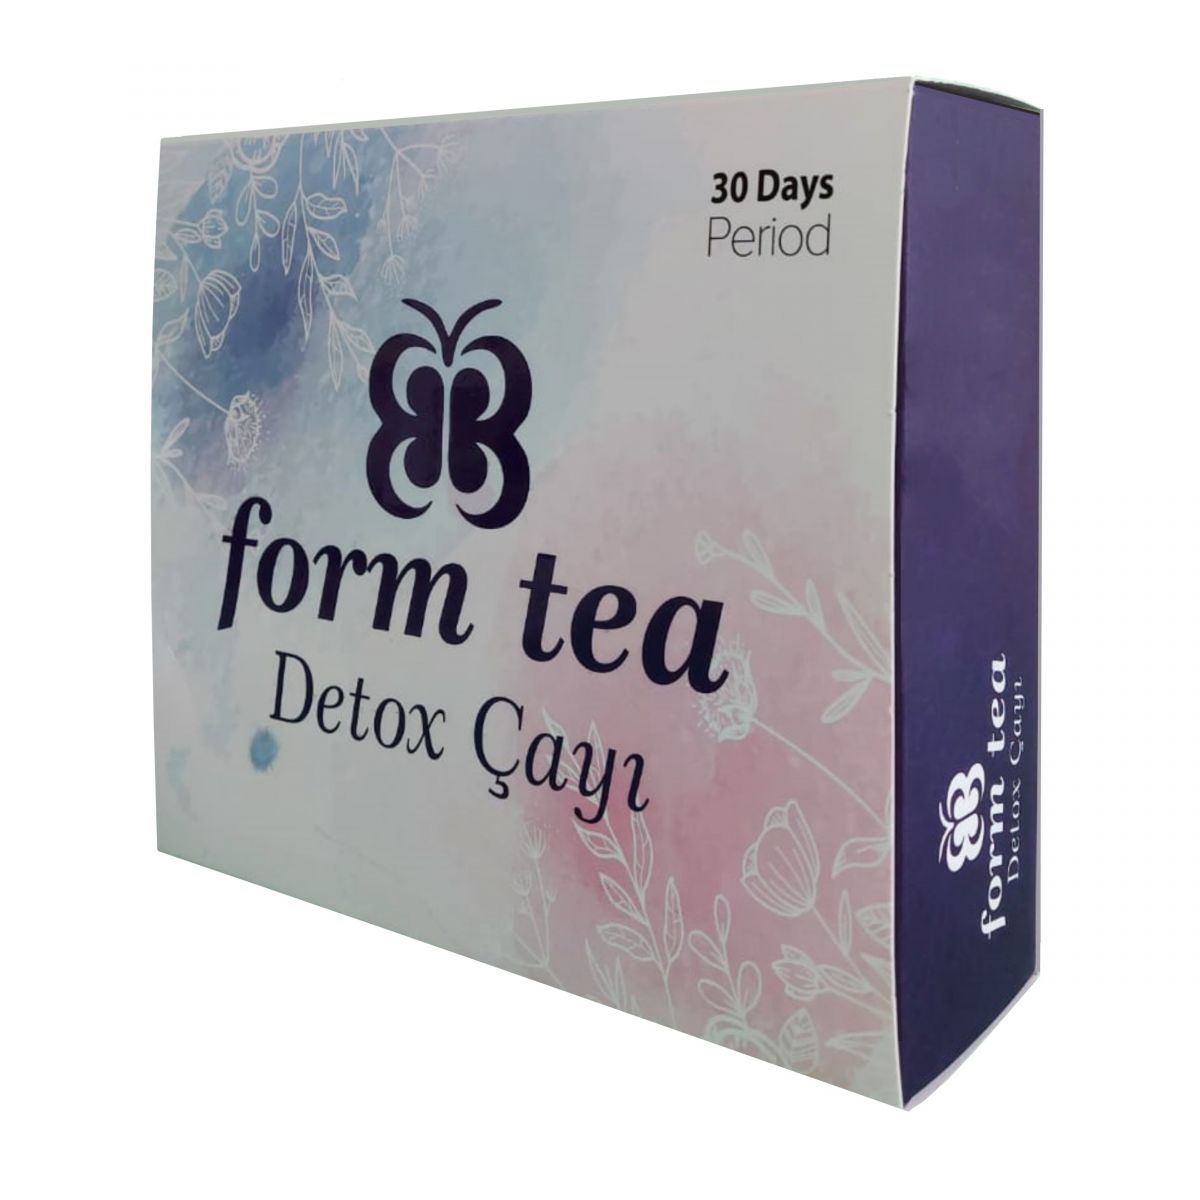 BB Form Tea - Bitkisel Detox Çayı